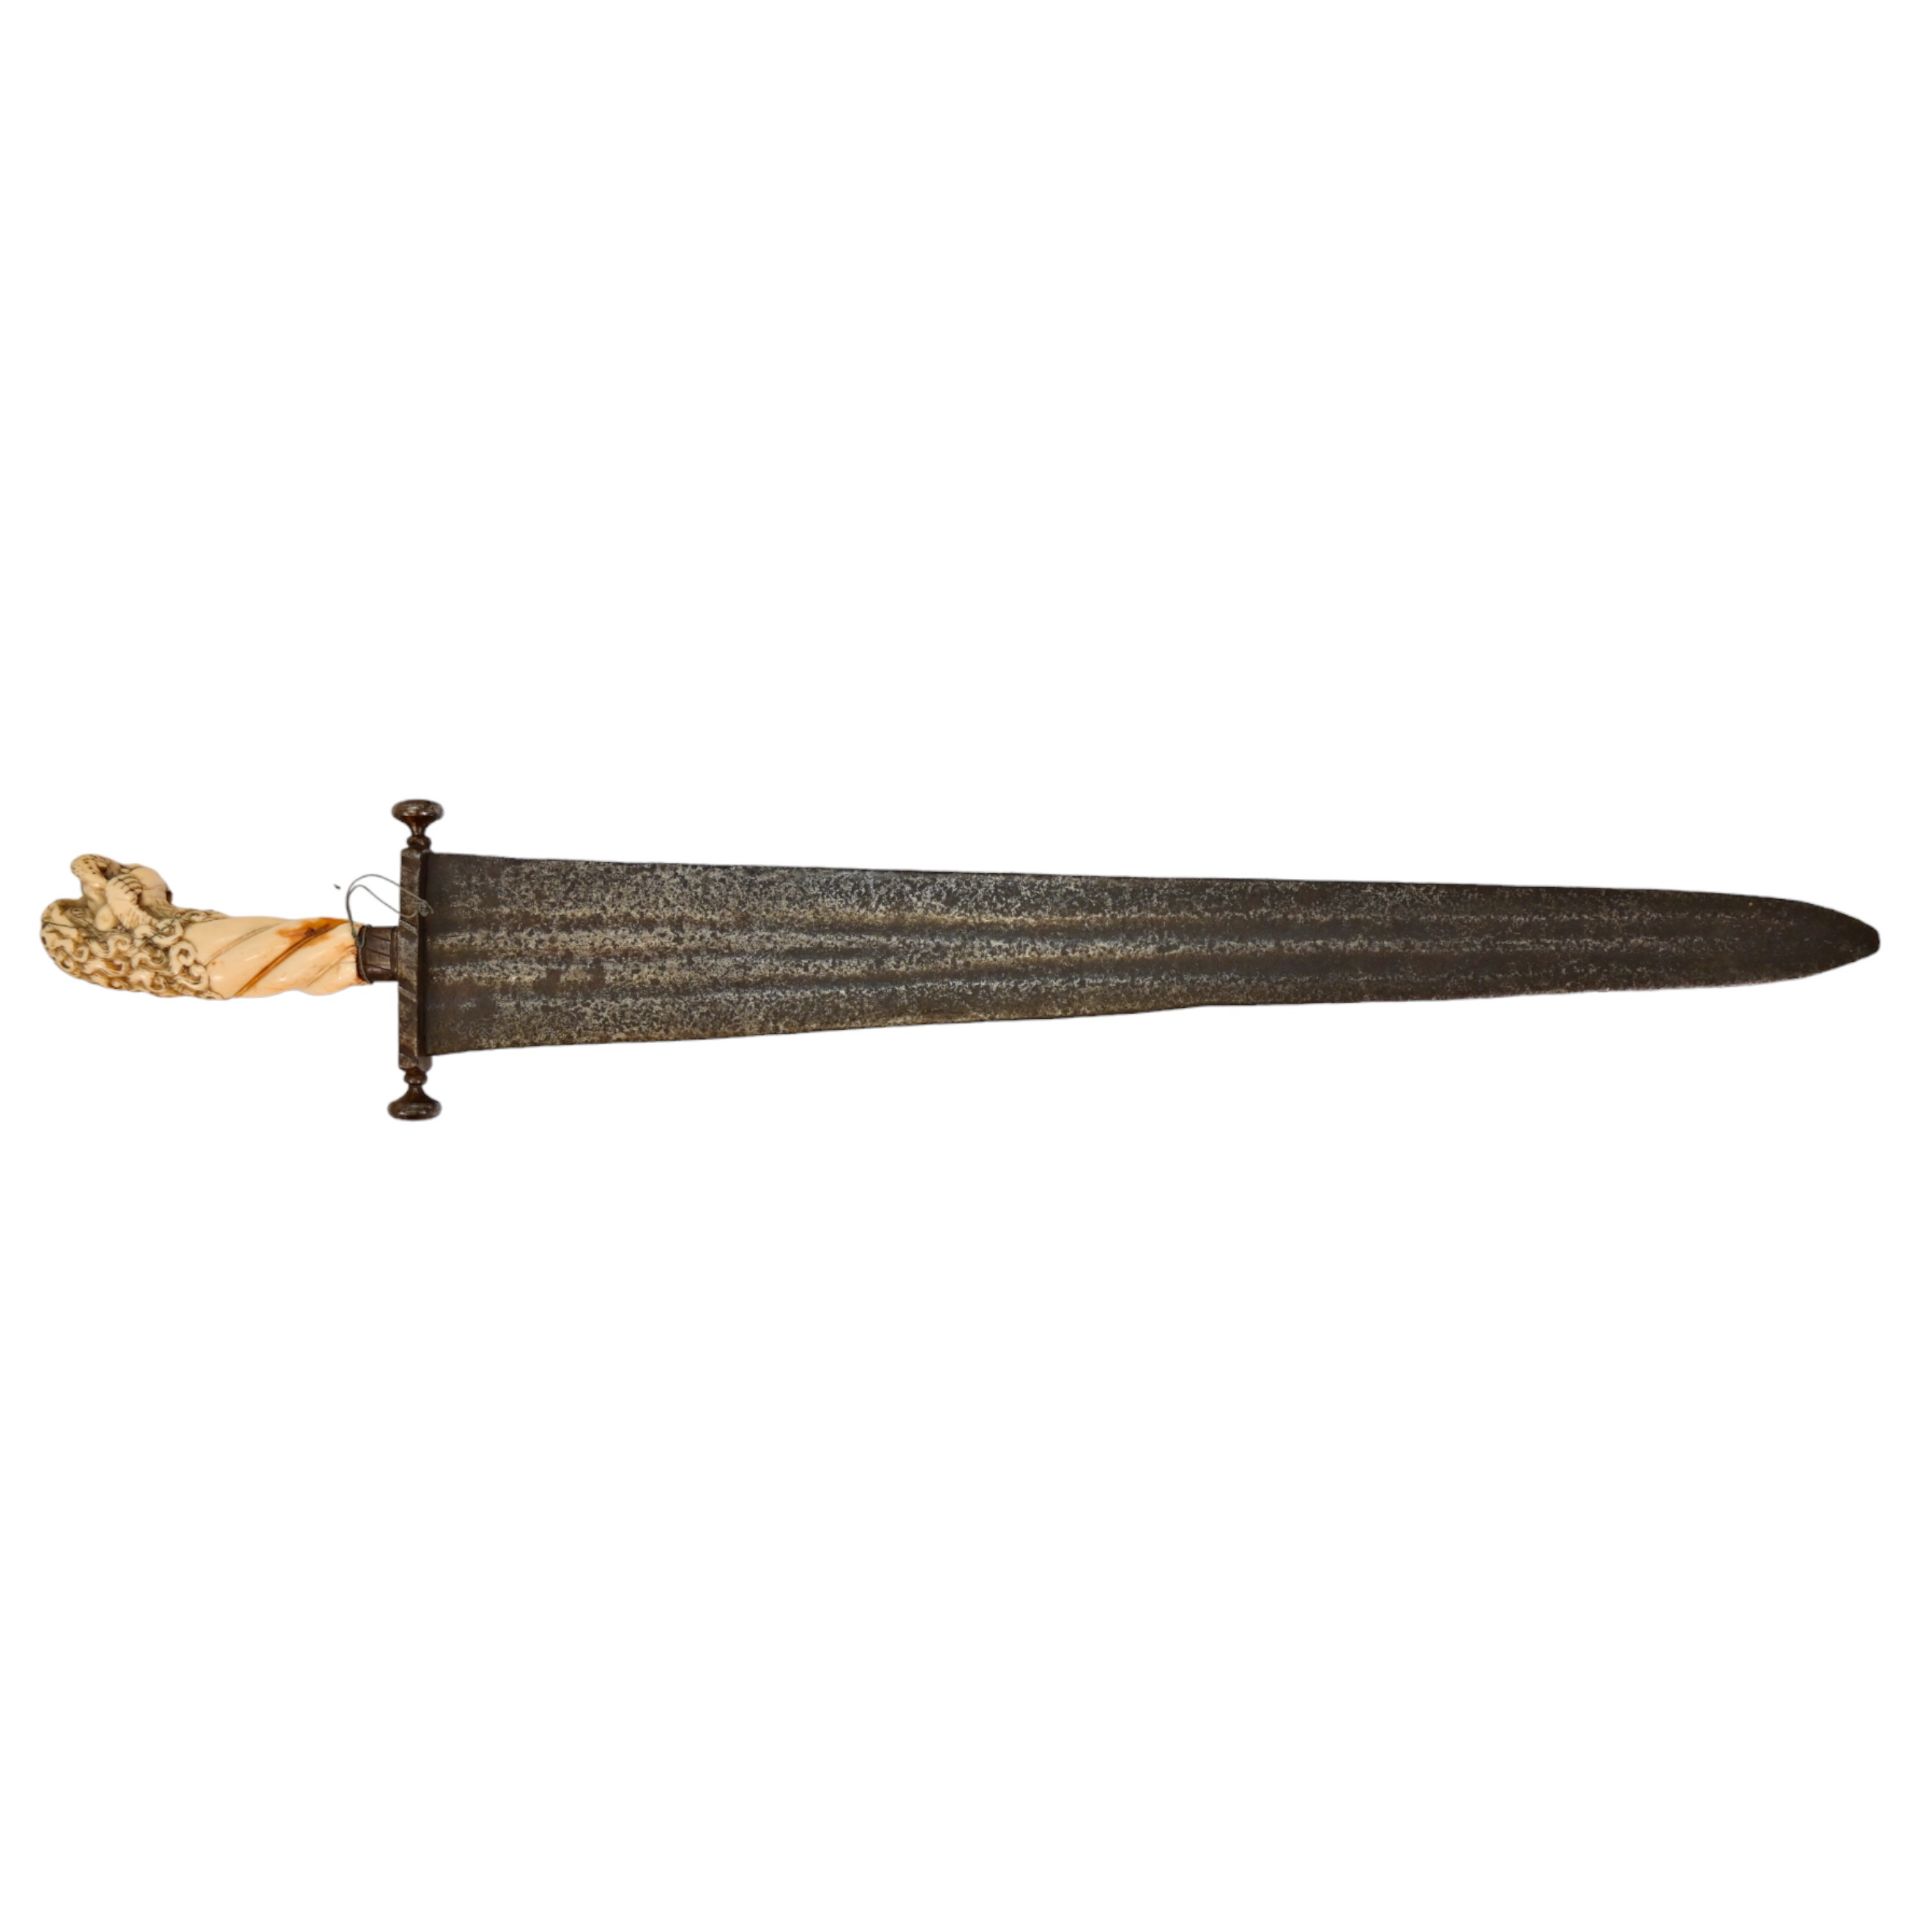 Rare Cinquedea type Sword, 16-17th Century, Italy. - Image 2 of 14